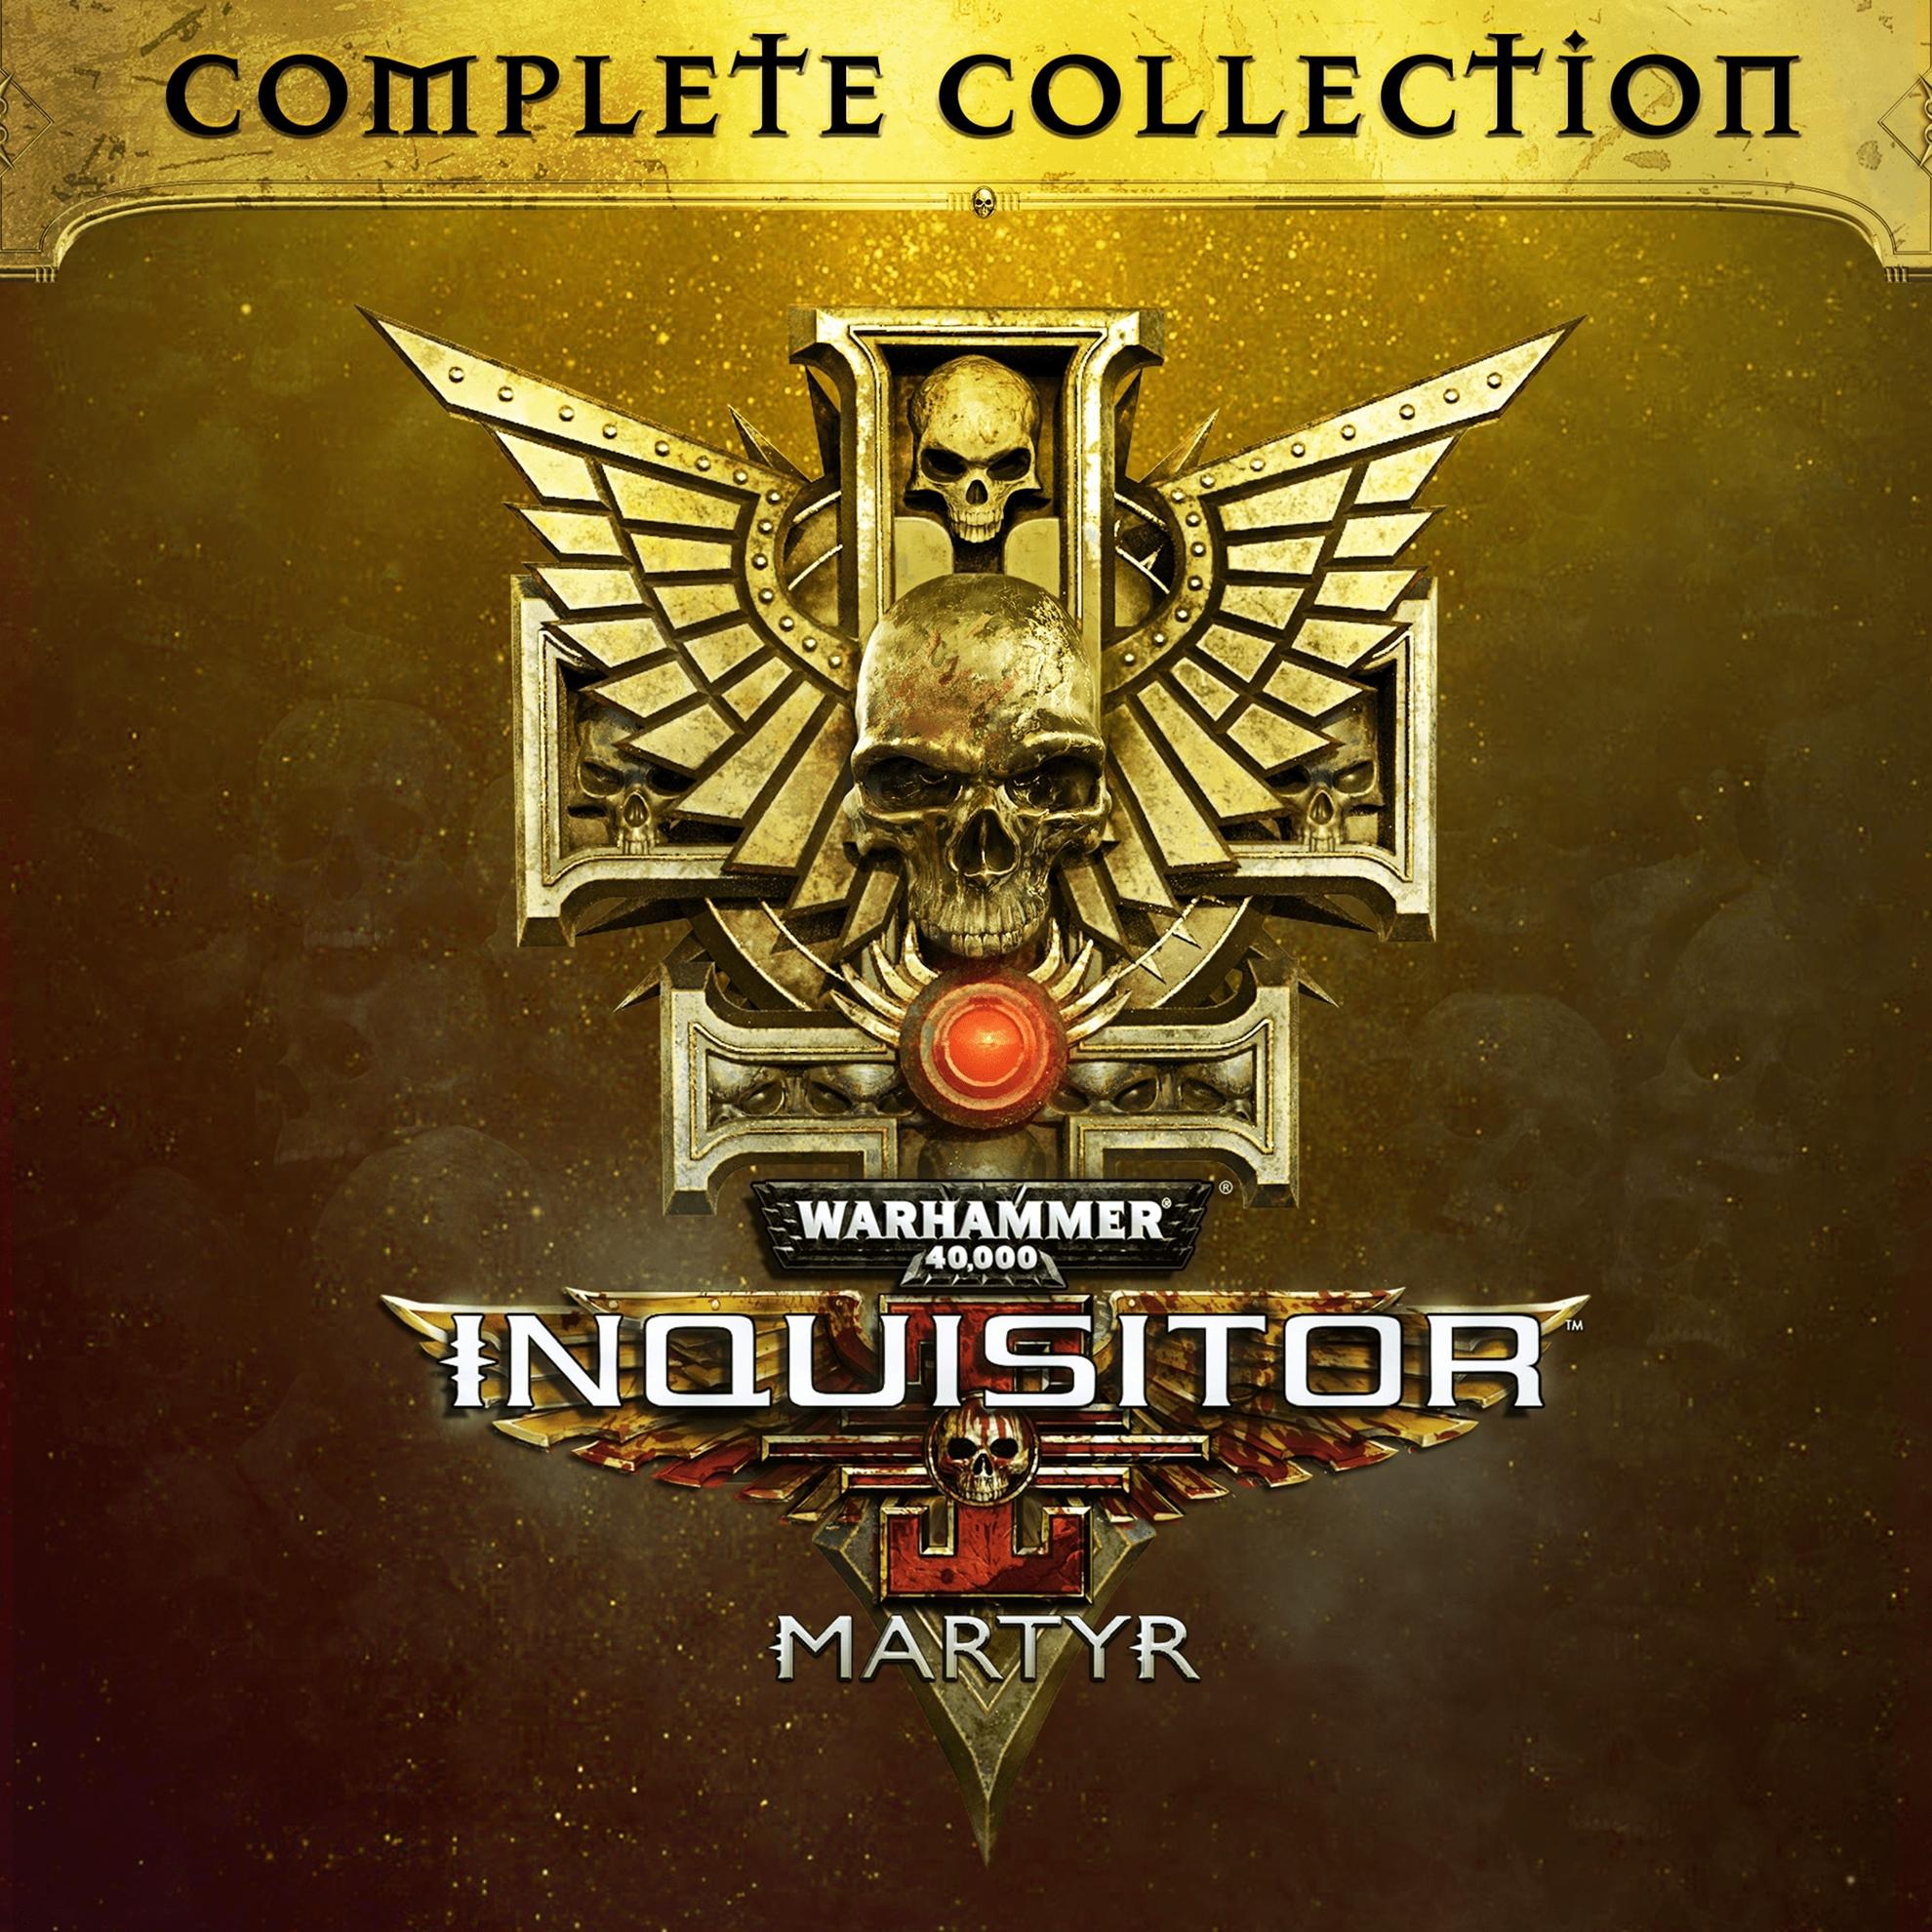 Bild von Warhammer 40,000: Inquisitor - Martyr Complete Collection